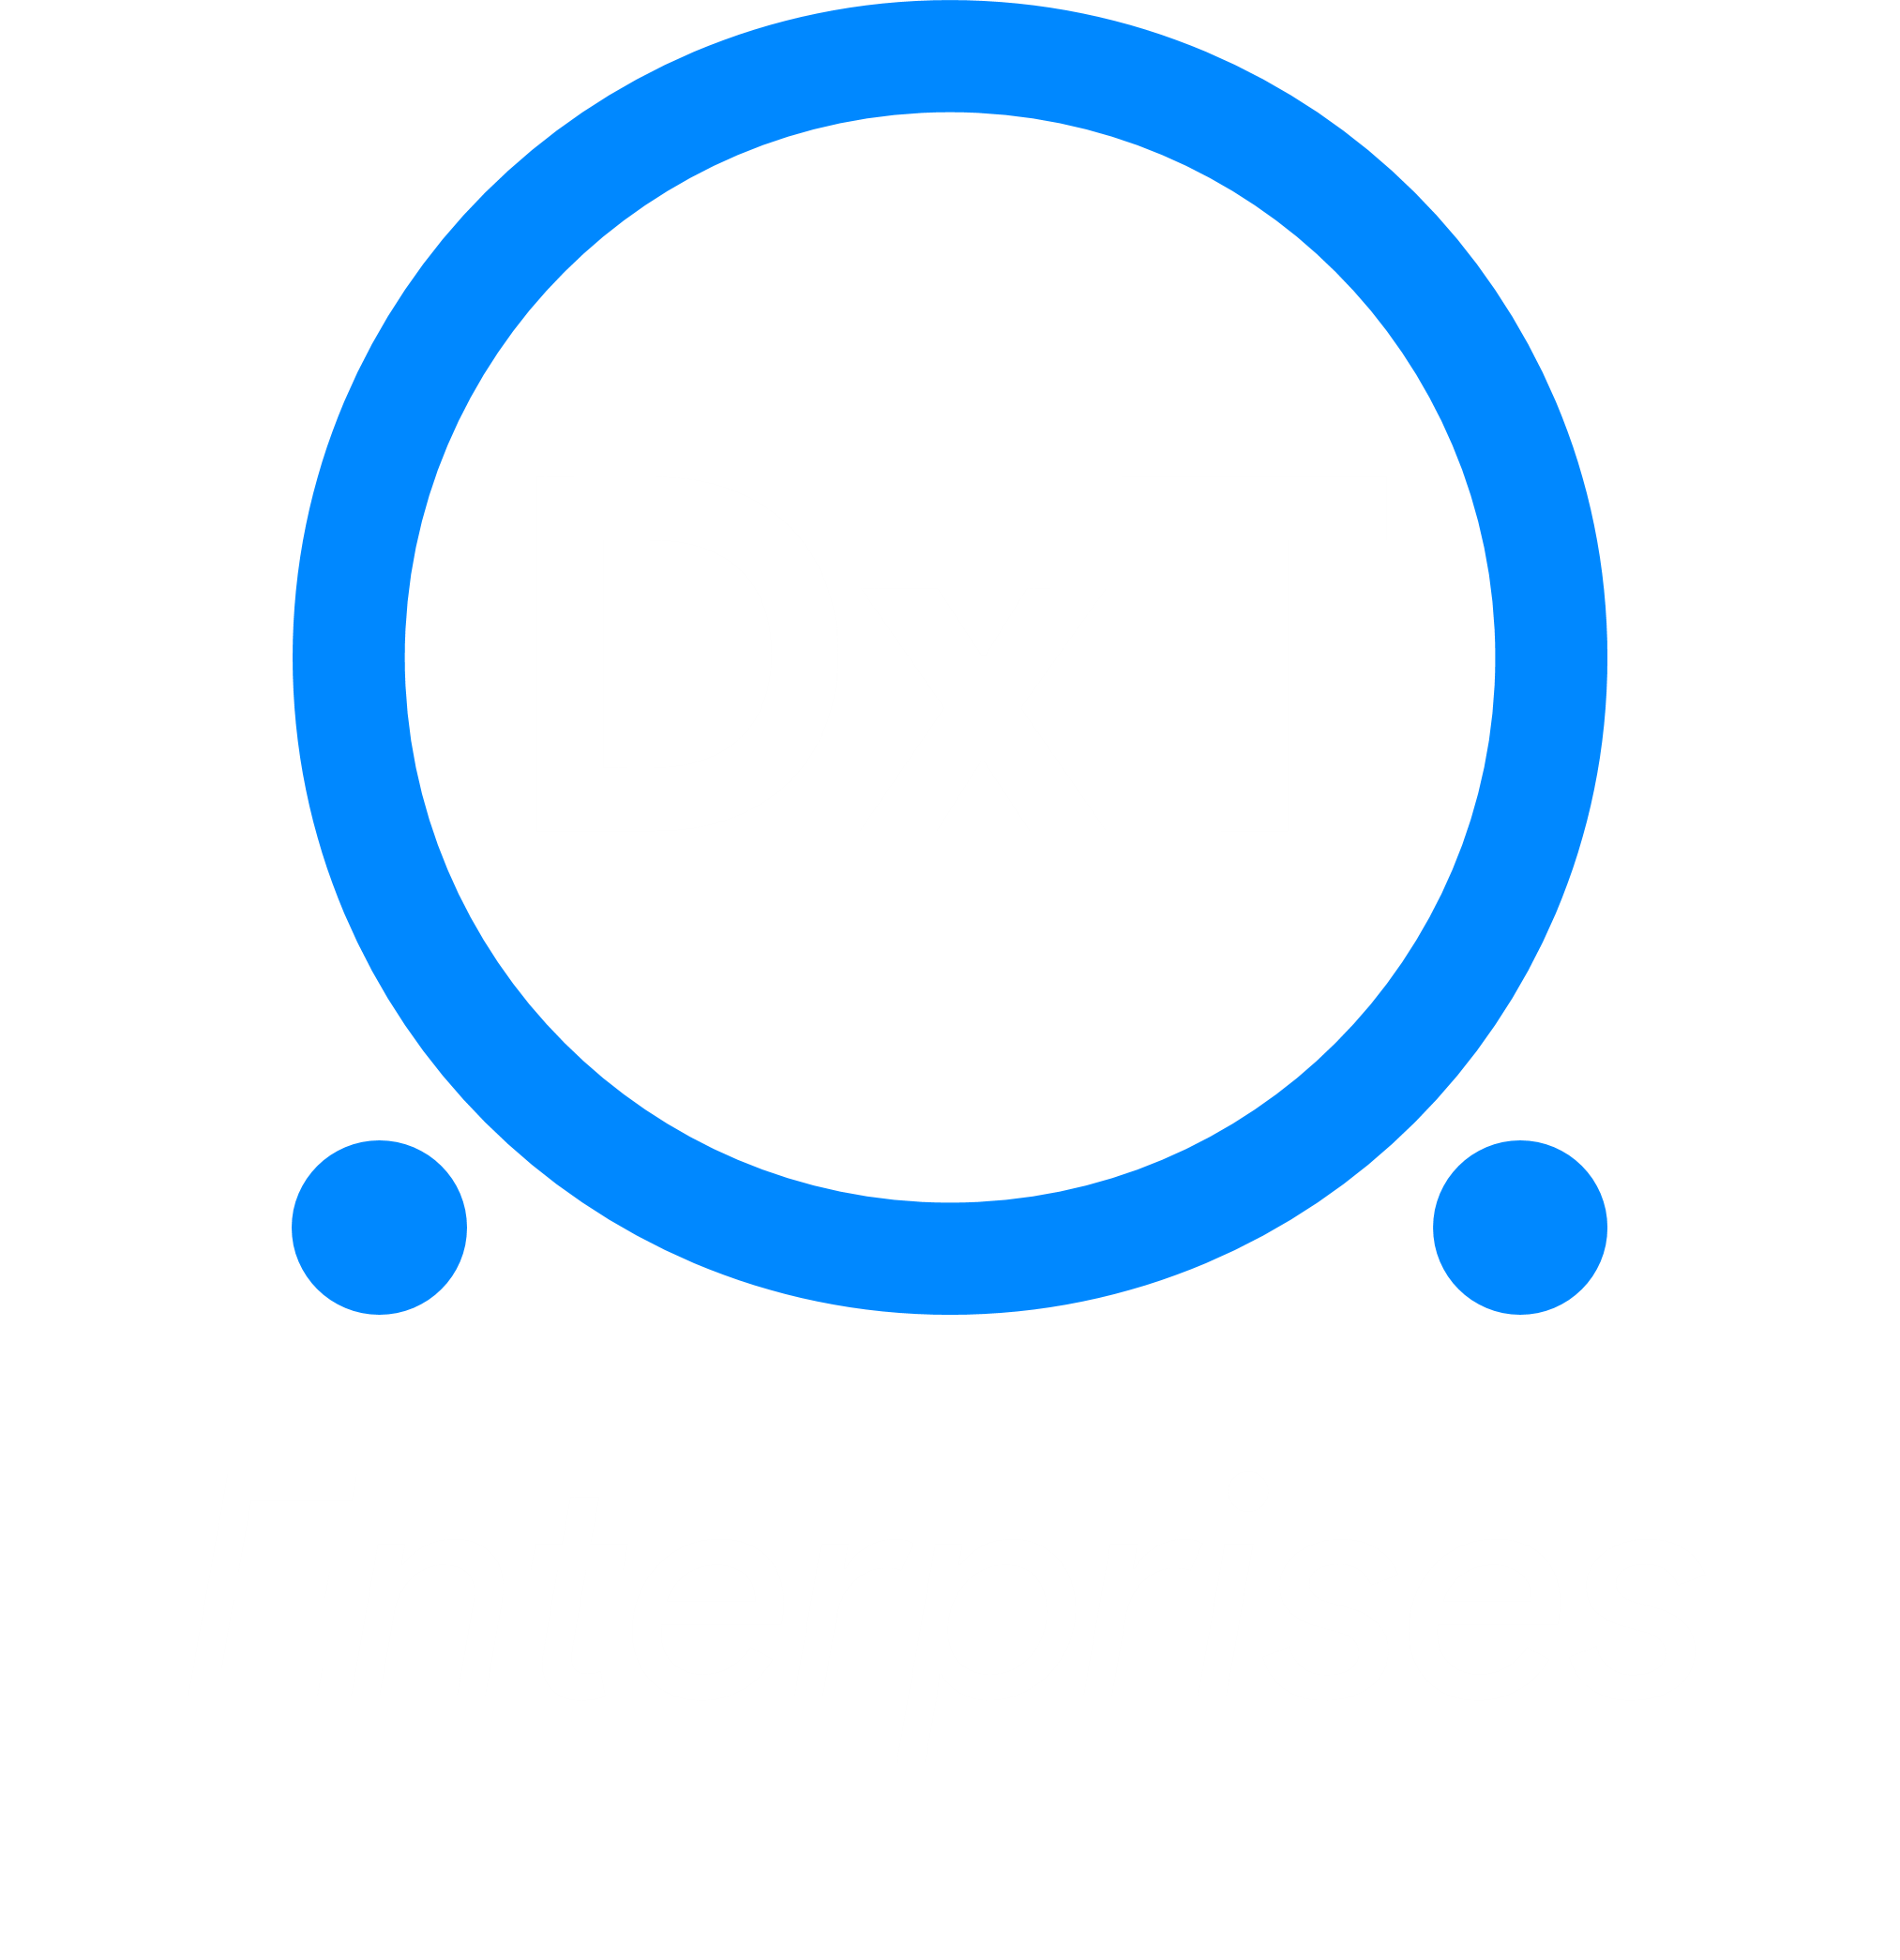 DxT Enterprises